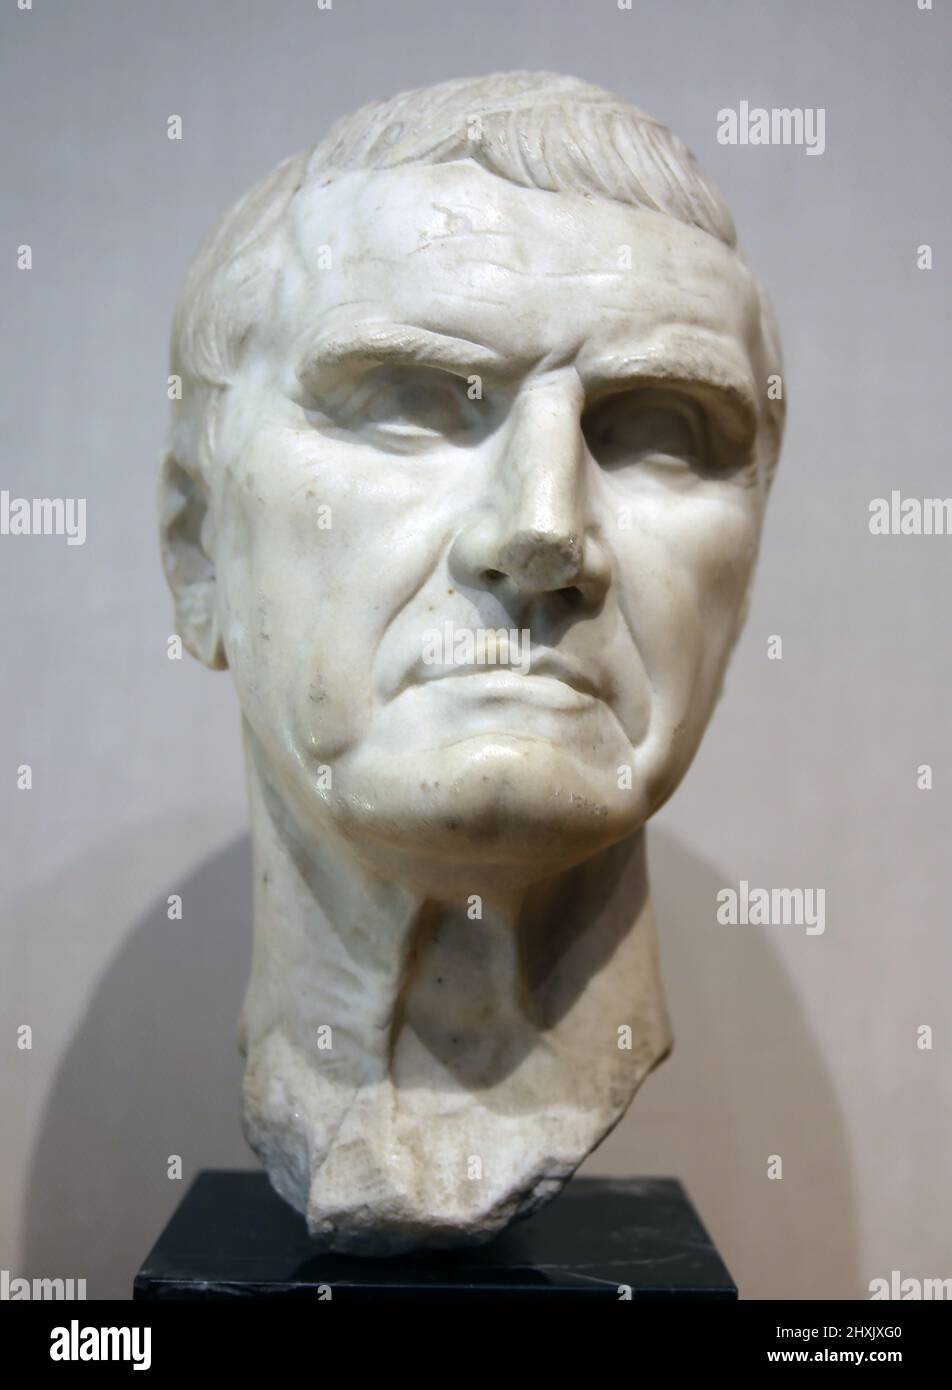 Portrait de Marcus Licinius Crassus (115-53 av. J.-C.). Général romain. Copie moderne du buste romain. Marbre blanc. Musée Frédéric Marés. Barcelone, Espagne. Banque D'Images